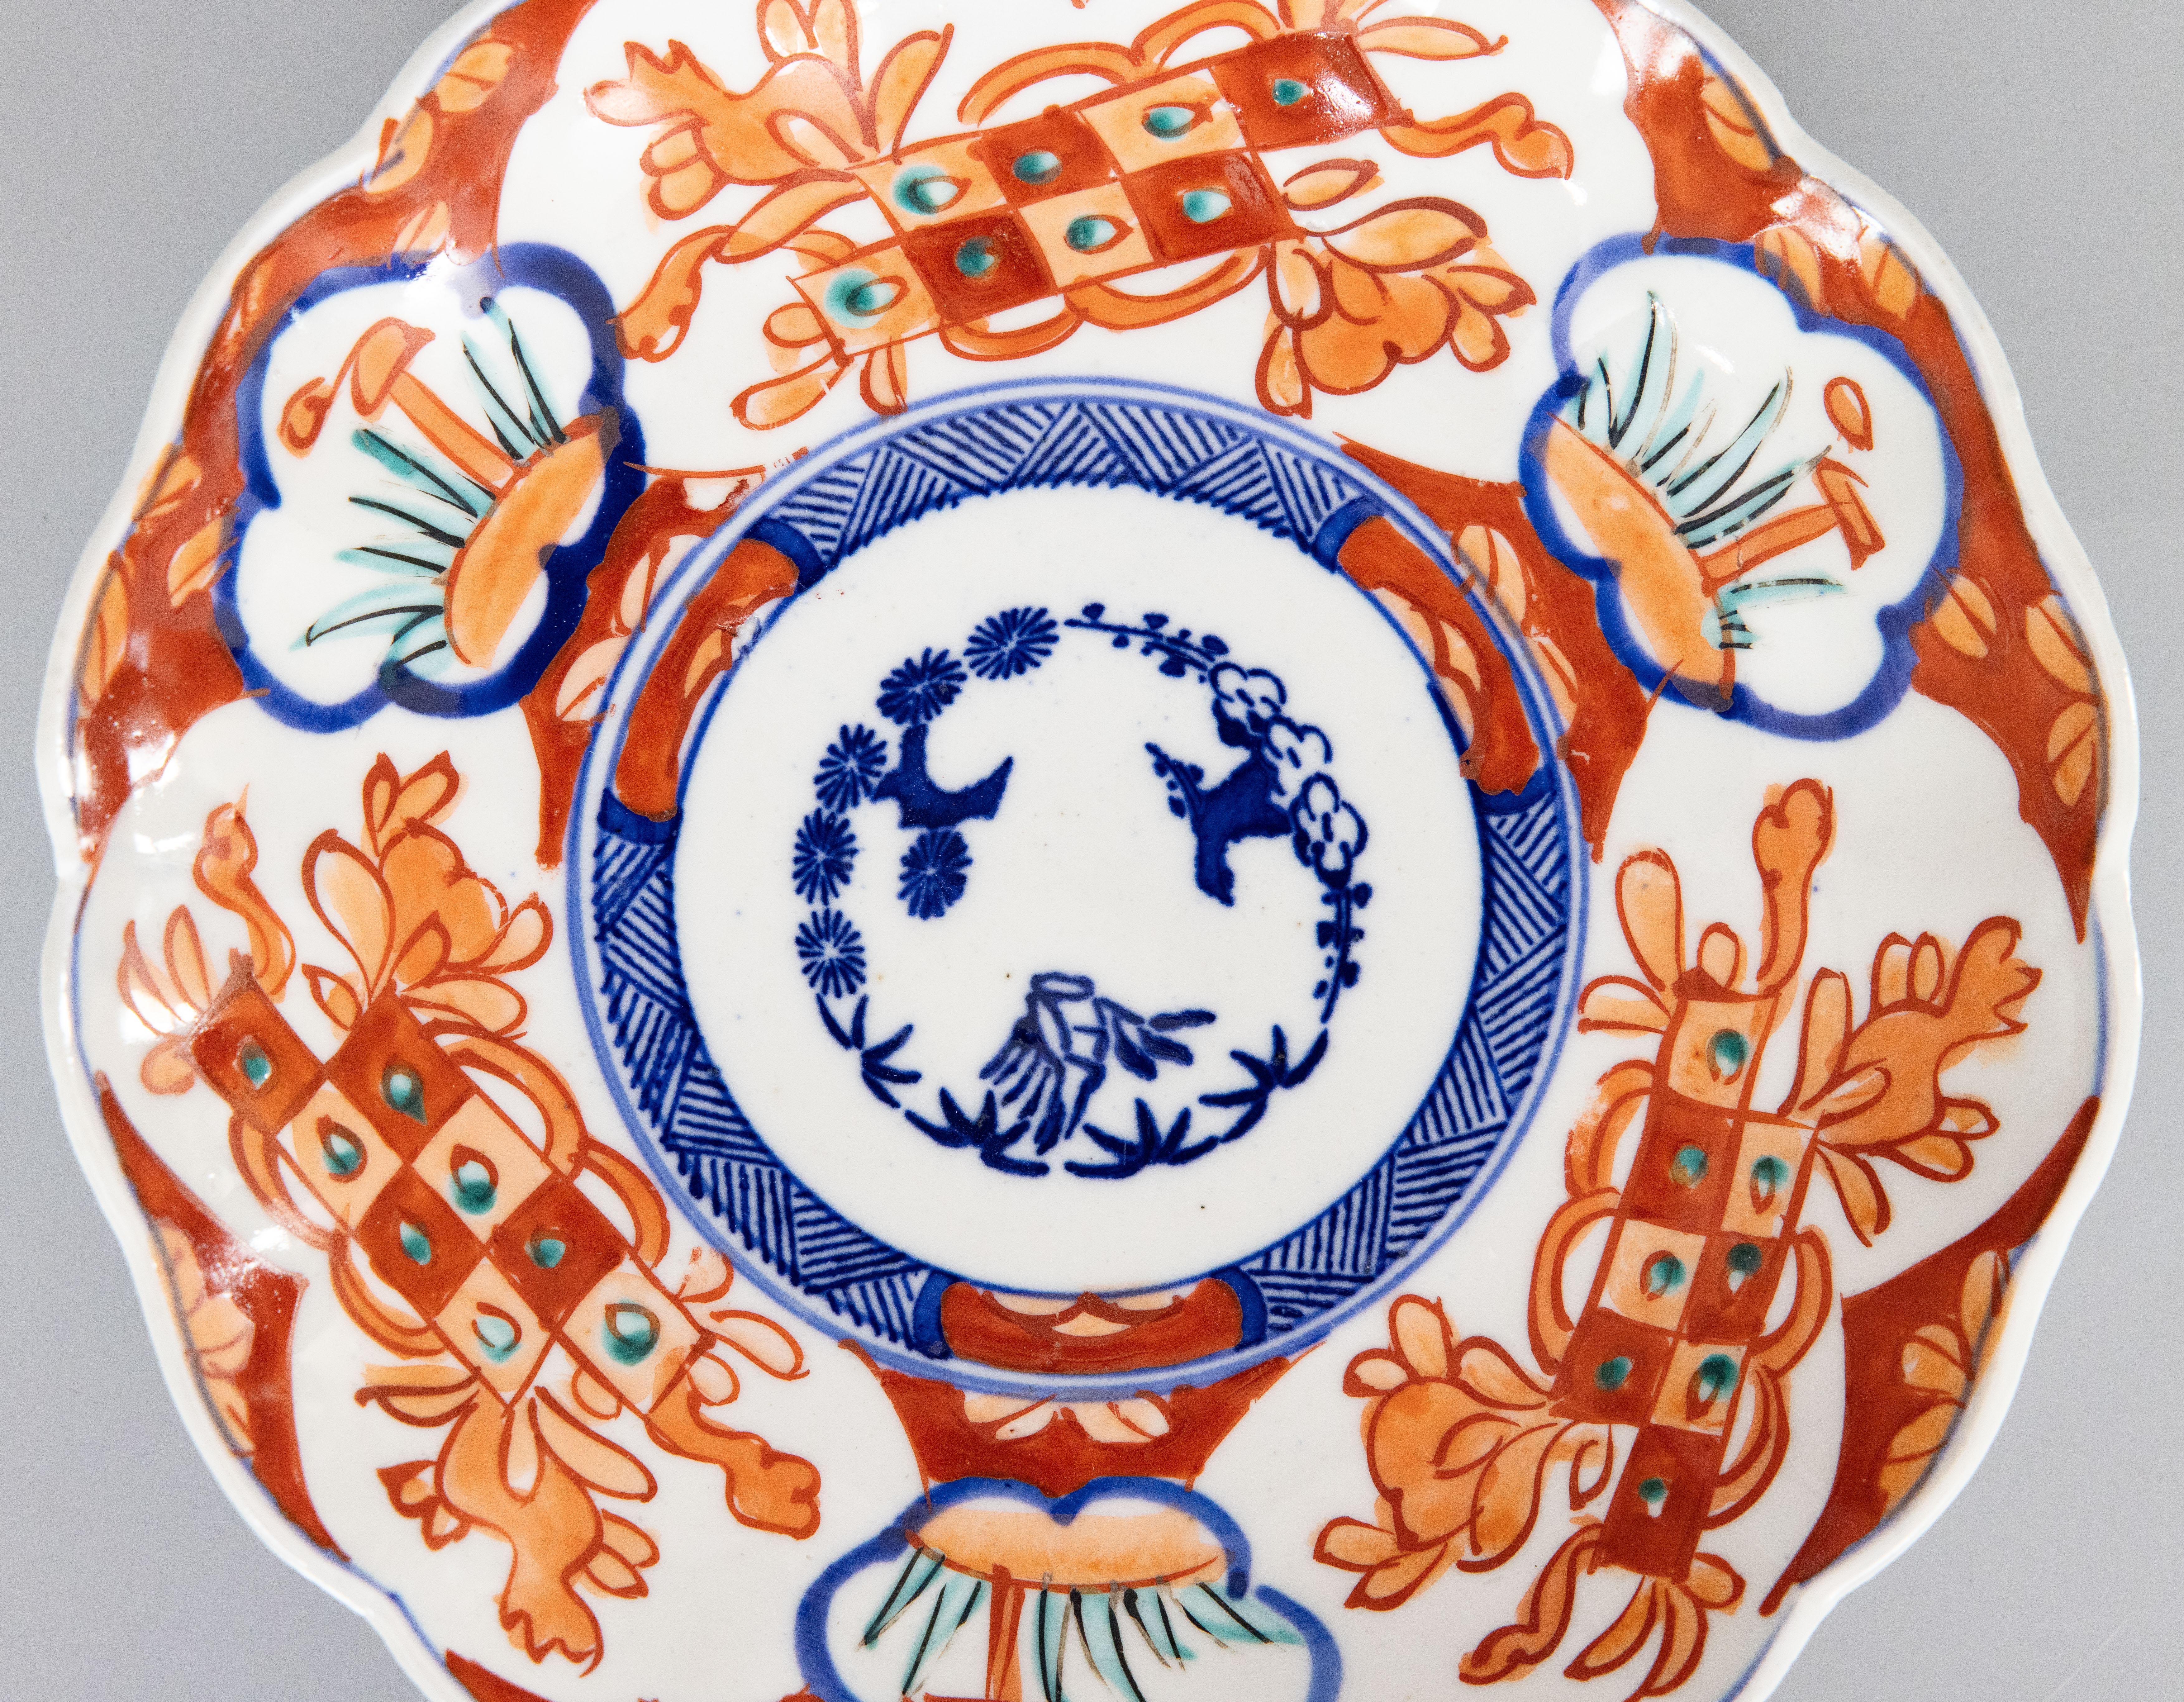 Wunderschöner antiker Imari-Teller aus dem 19. Jahrhundert mit gezacktem Rand. Mit leuchtenden Orange-, Blau- und Grüntönen.